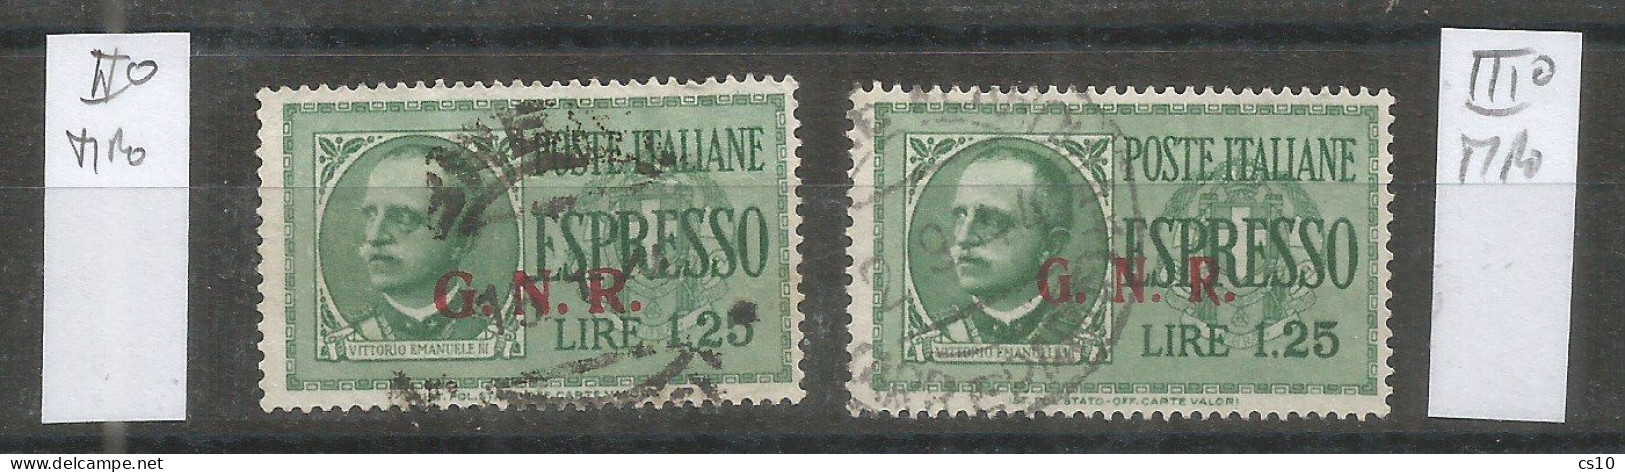 Italia Rep.Sociale Emissioni Guardia Naz. Repubblicana - Espresso L.1,25 USATO  II° Tipo + III° Tipo - Exprespost